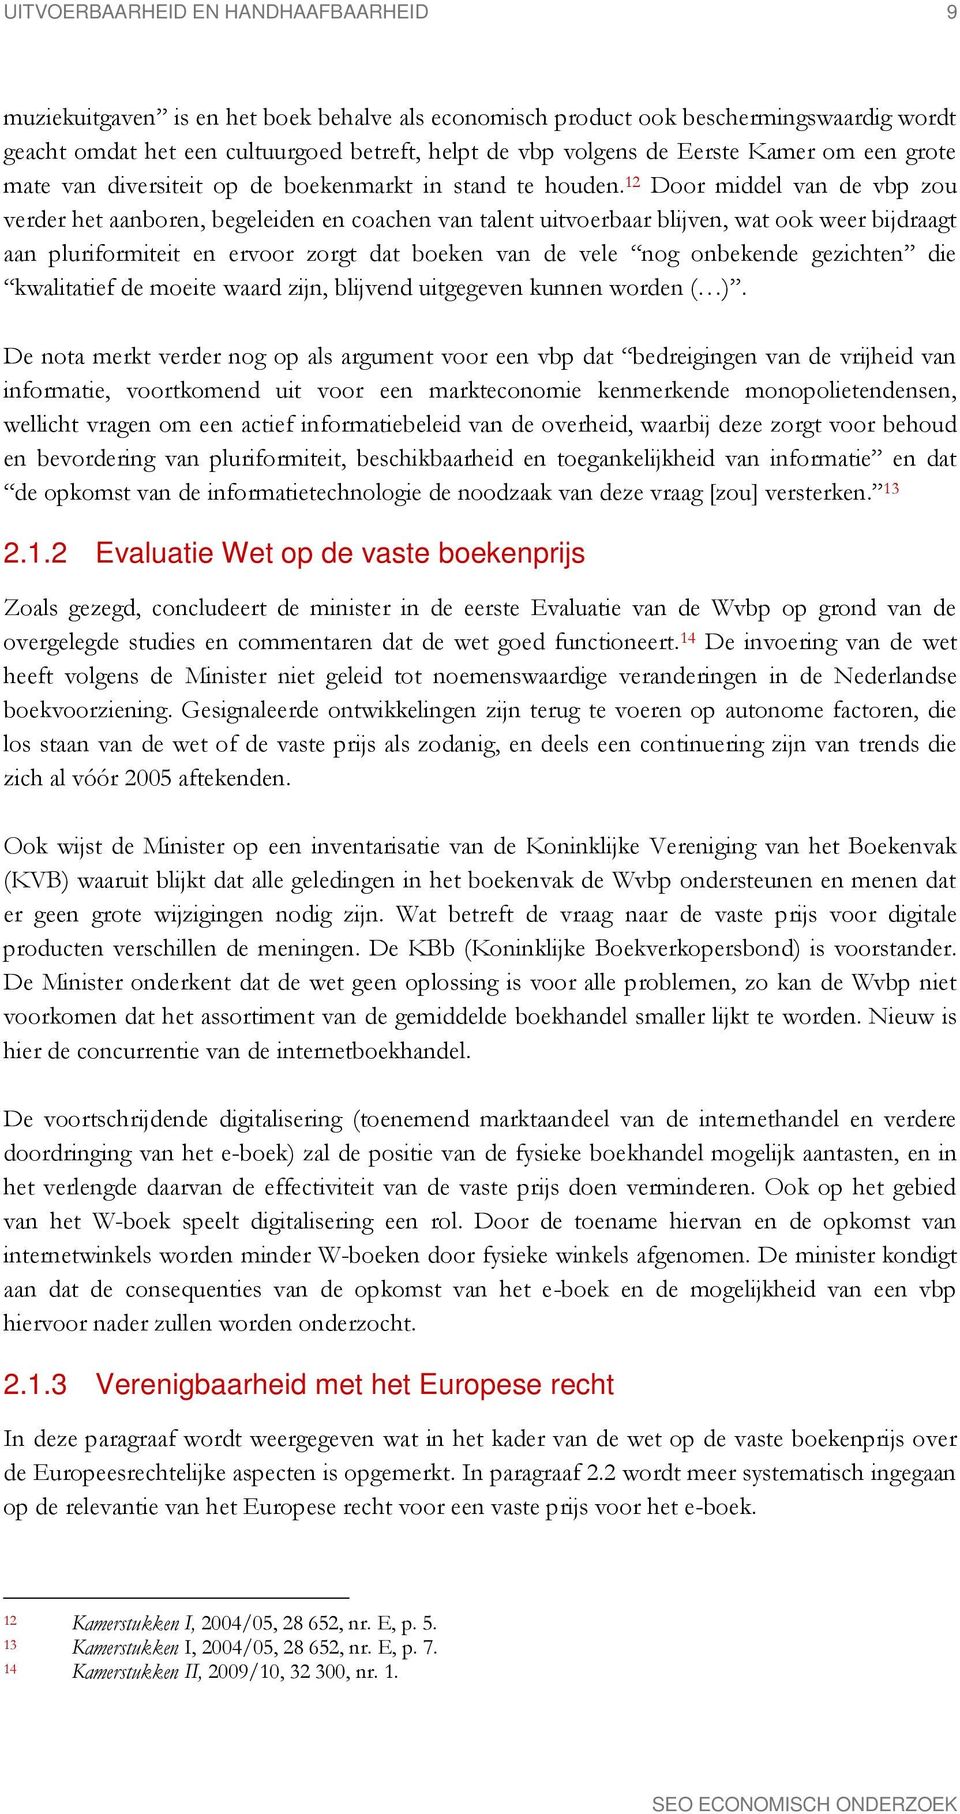 12 Door middel van de vbp zou verder het aanboren, begeleiden en coachen van talent uitvoerbaar blijven, wat ook weer bijdraagt aan pluriformiteit en ervoor zorgt dat boeken van de vele nog onbekende